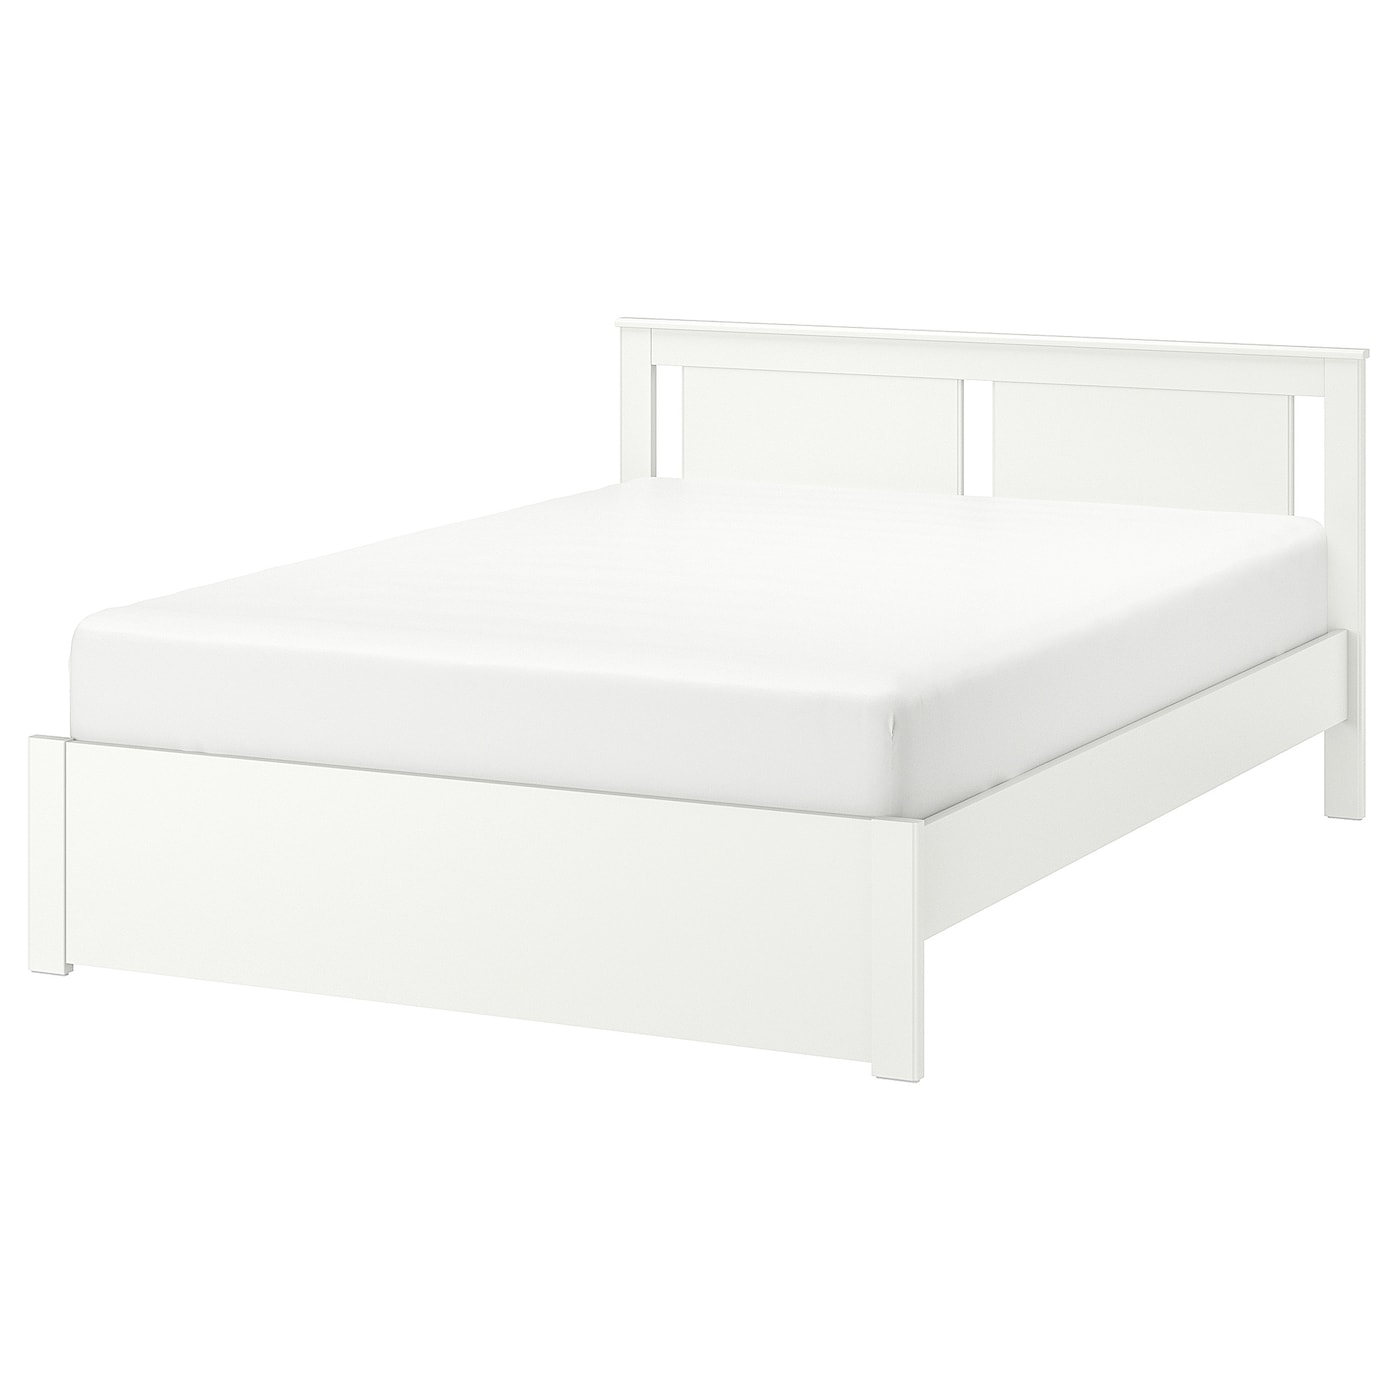 Двуспальная кровать - IKEA SONGESAND/LINDBÅDEN/LINDBADEN, 200х160 см, белый, СОНГЕСАНД/ЛИНДБАДЕН ИКЕА